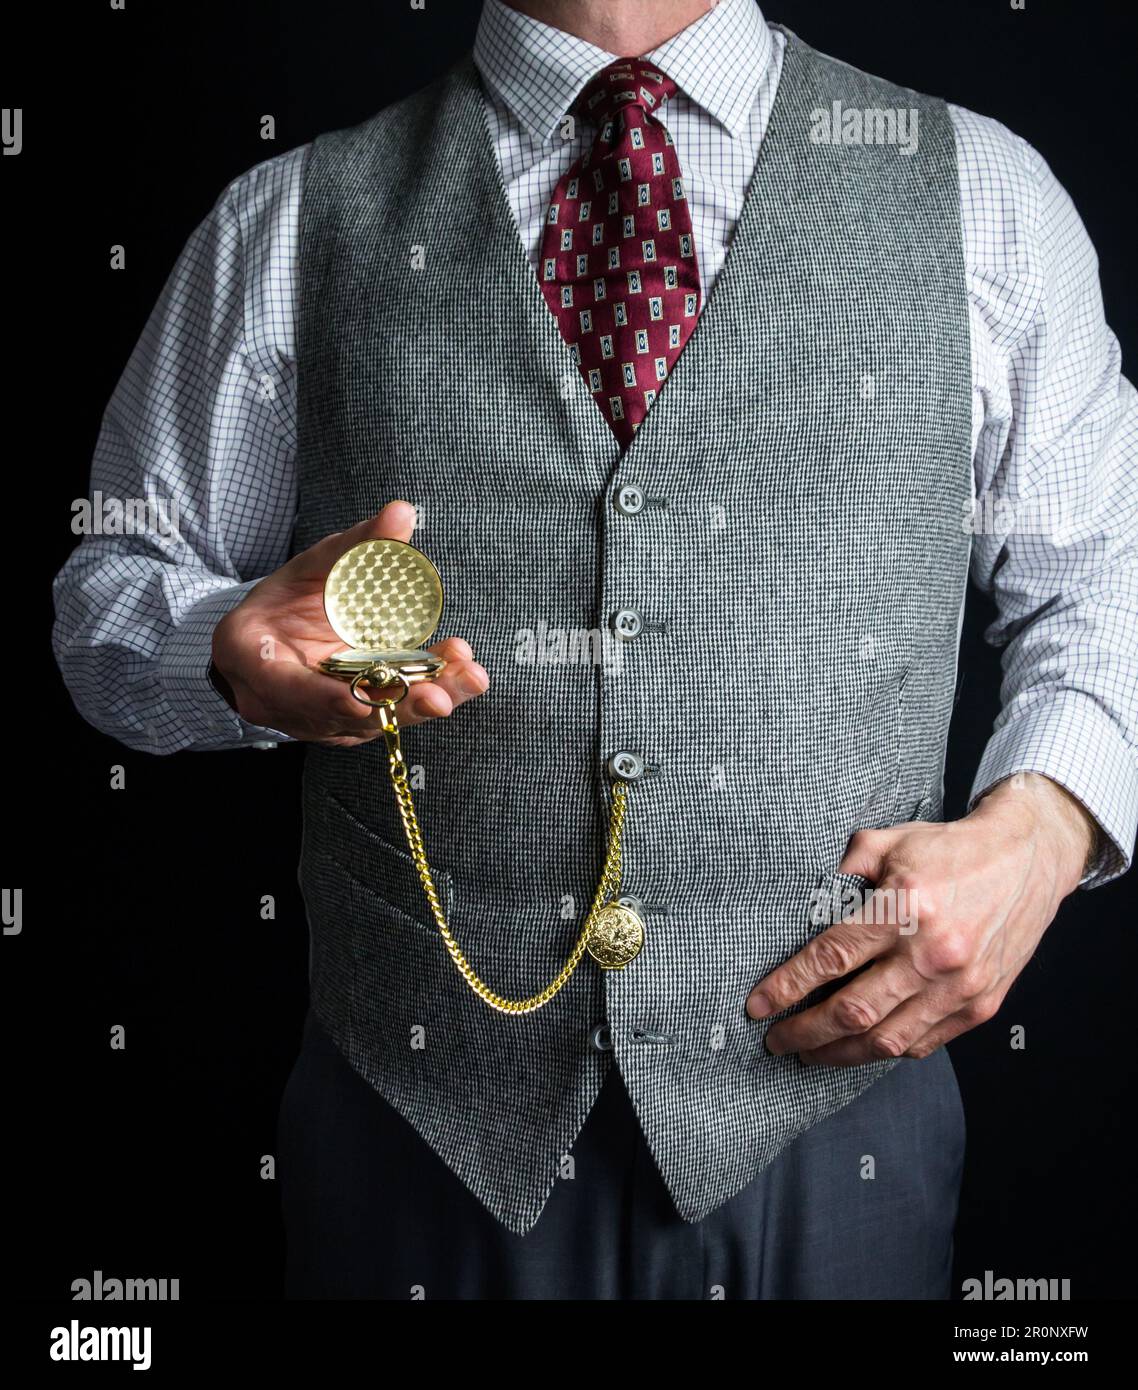 Portrait d'un homme en tweed Vest ou gilet de costume tenant une montre de poche. Style vintage et mode rétro de gentleman anglais classique. Banque D'Images